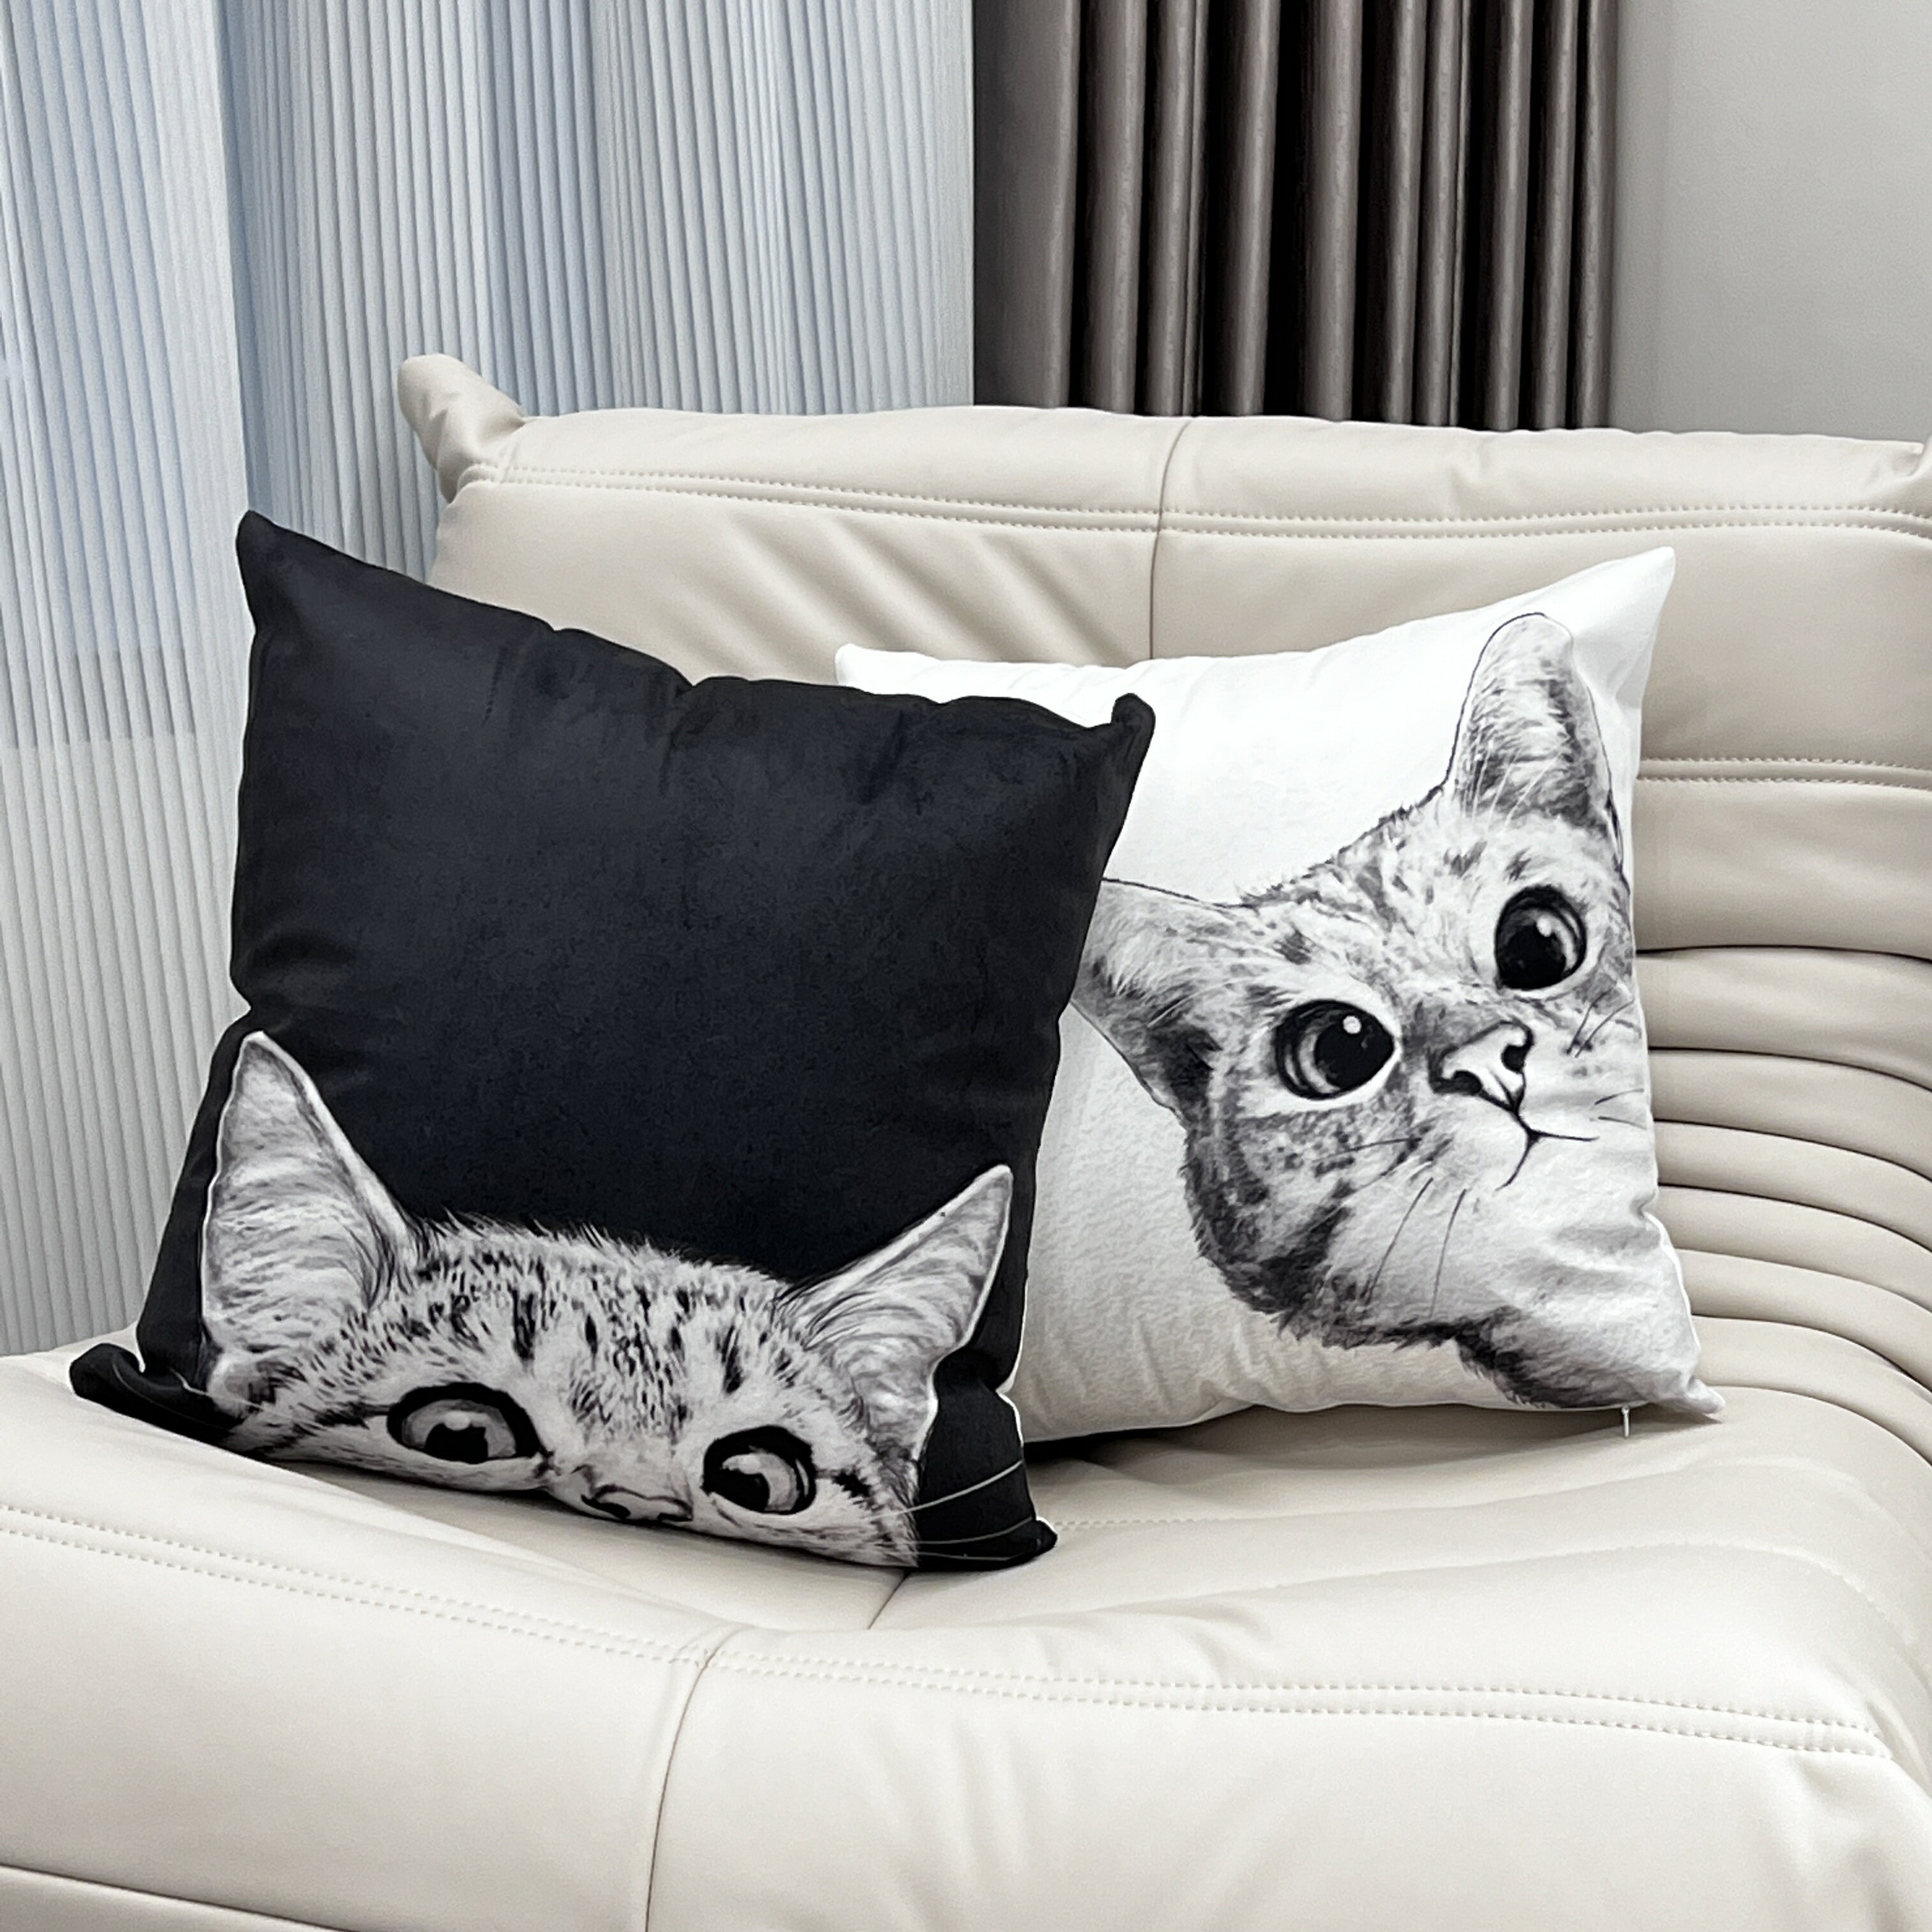 可愛貓咪抱枕 北歐ins靠墊客廳沙發腰枕靠背墊床頭靠枕套女生禮物